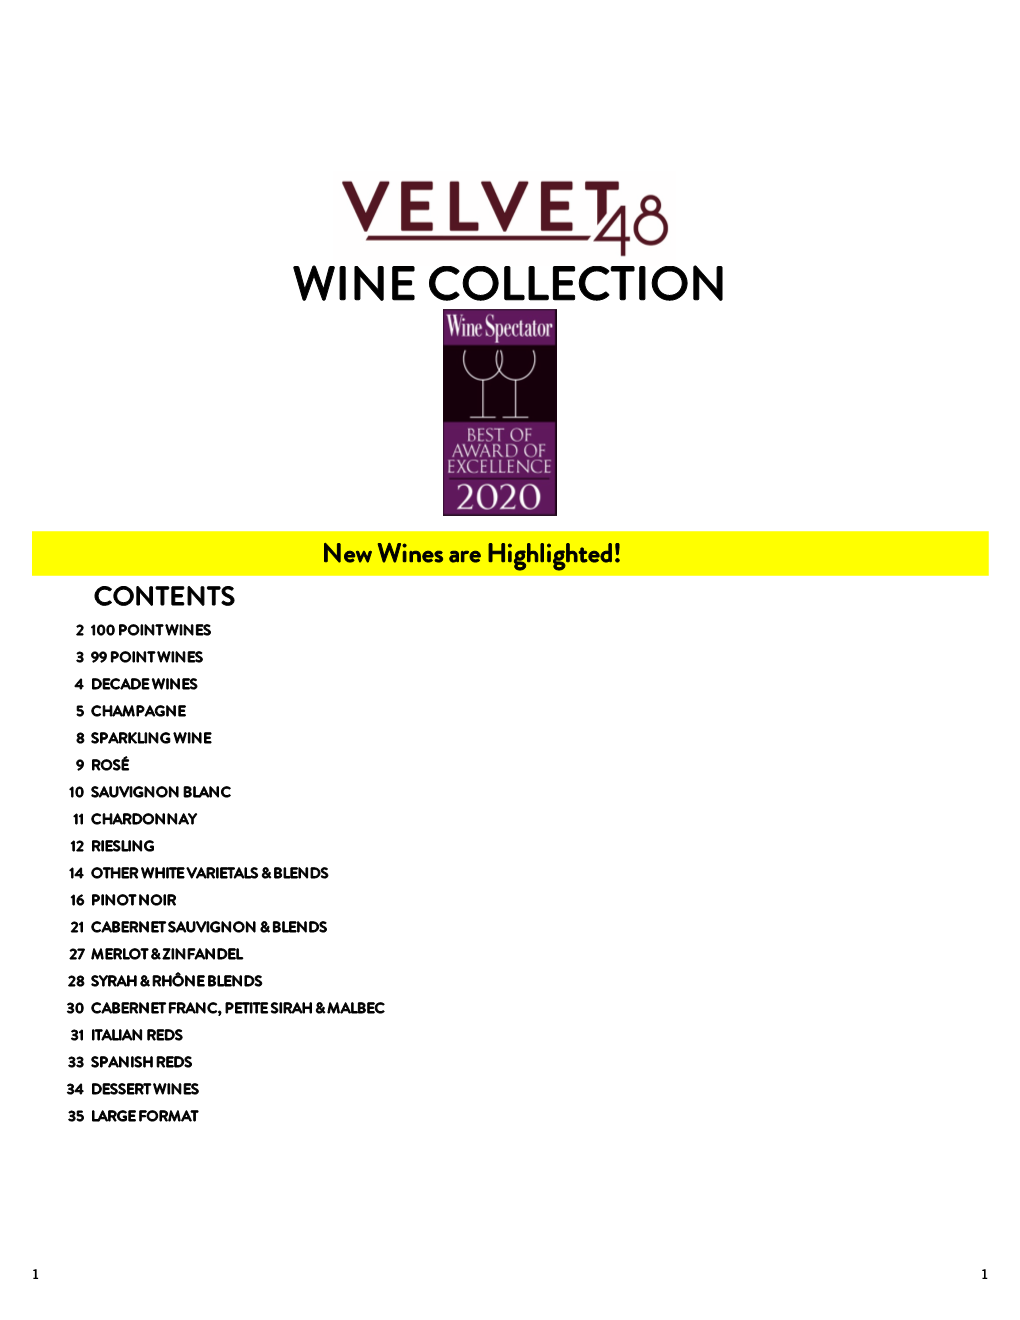 Velvet 48 Master Wine List Sept 2020-Web